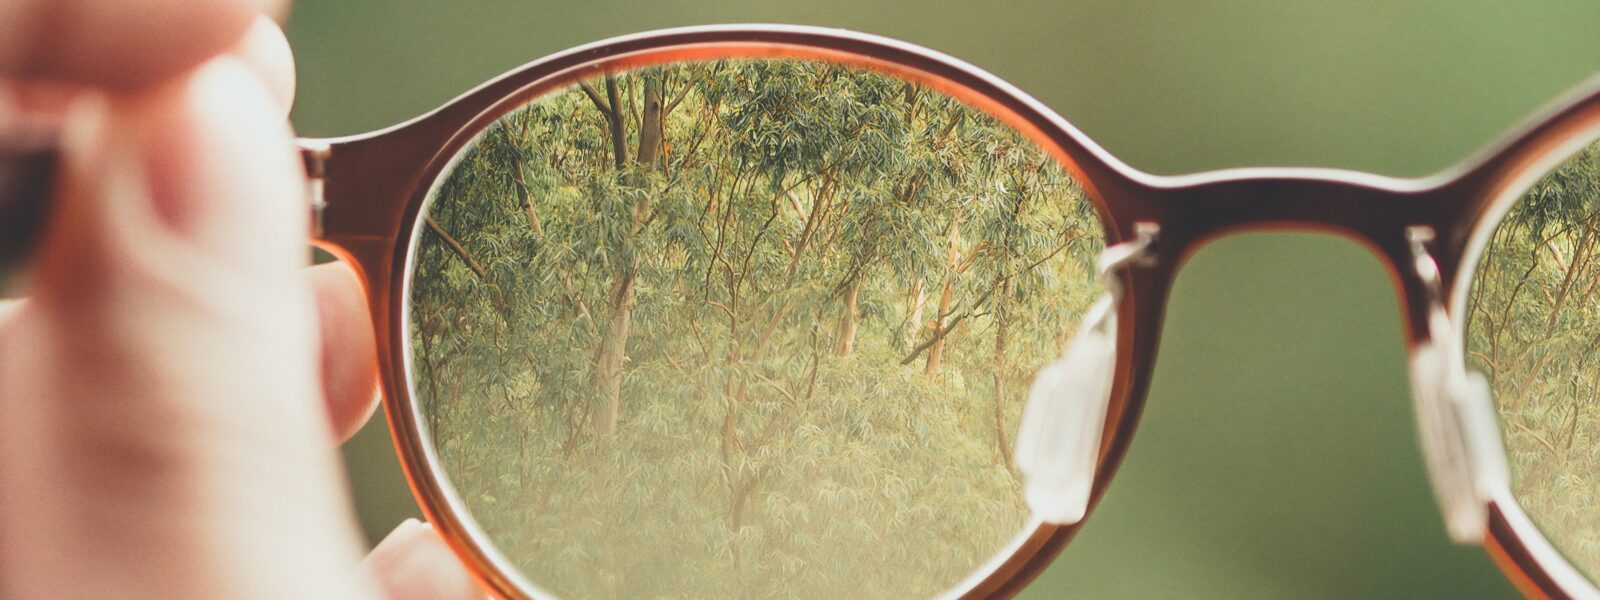 Der Blick durch eine Brille. Die Brillengläser zeigen einen Wald, drumherum ist alles unscharf